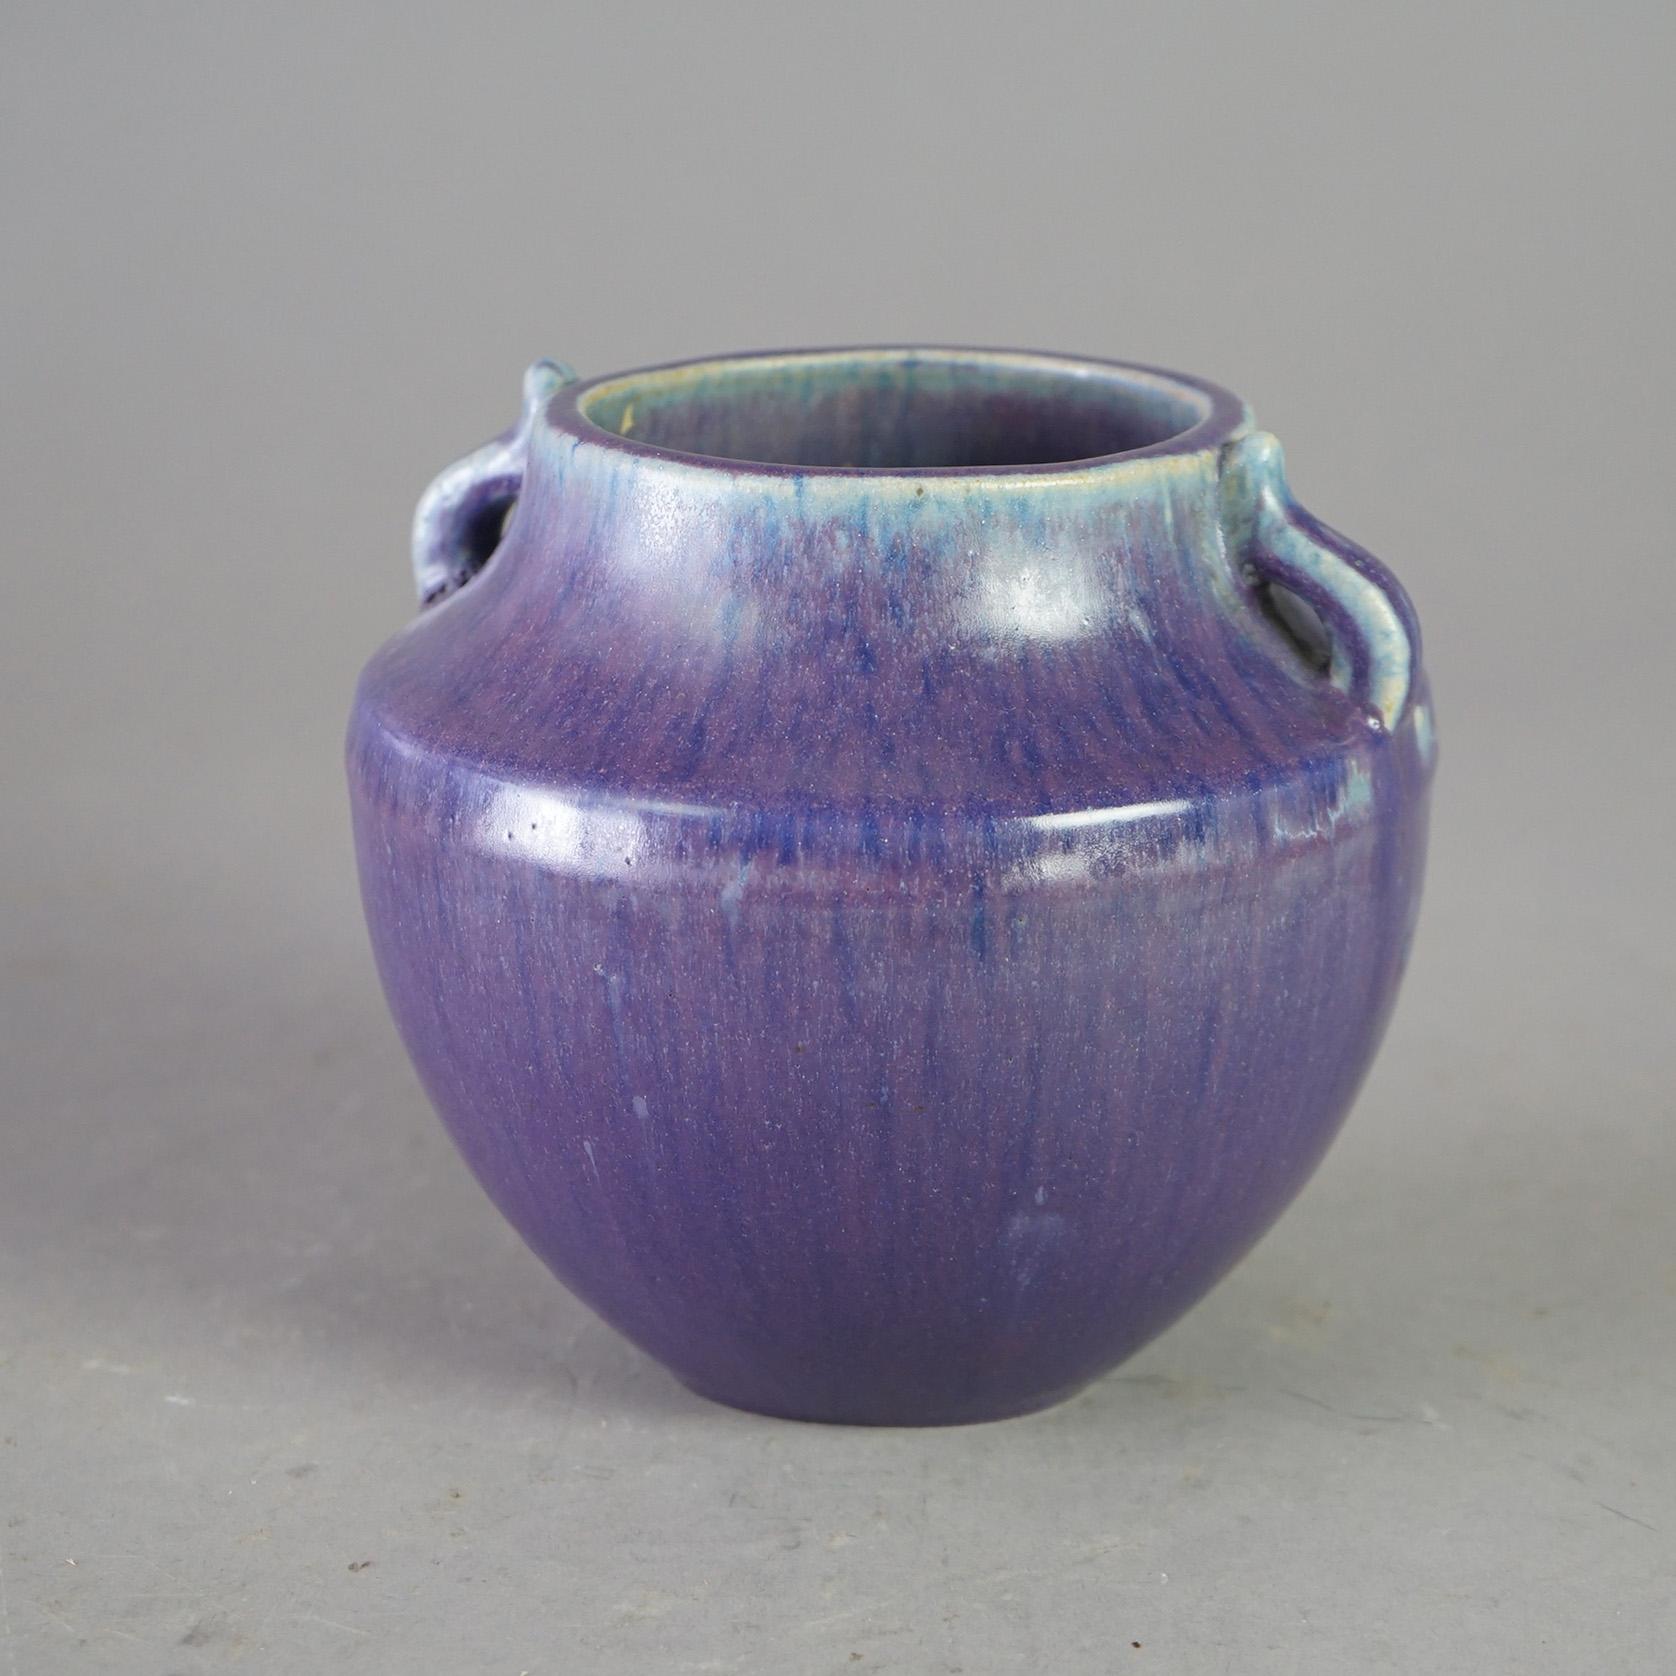 Eine antike Vase von Fulper bietet Kunst Töpferei Konstruktion mit Doppelgriffen, Glasur und Hersteller Marke auf dem Boden, wie fotografiert, c1920

Maße - 6 